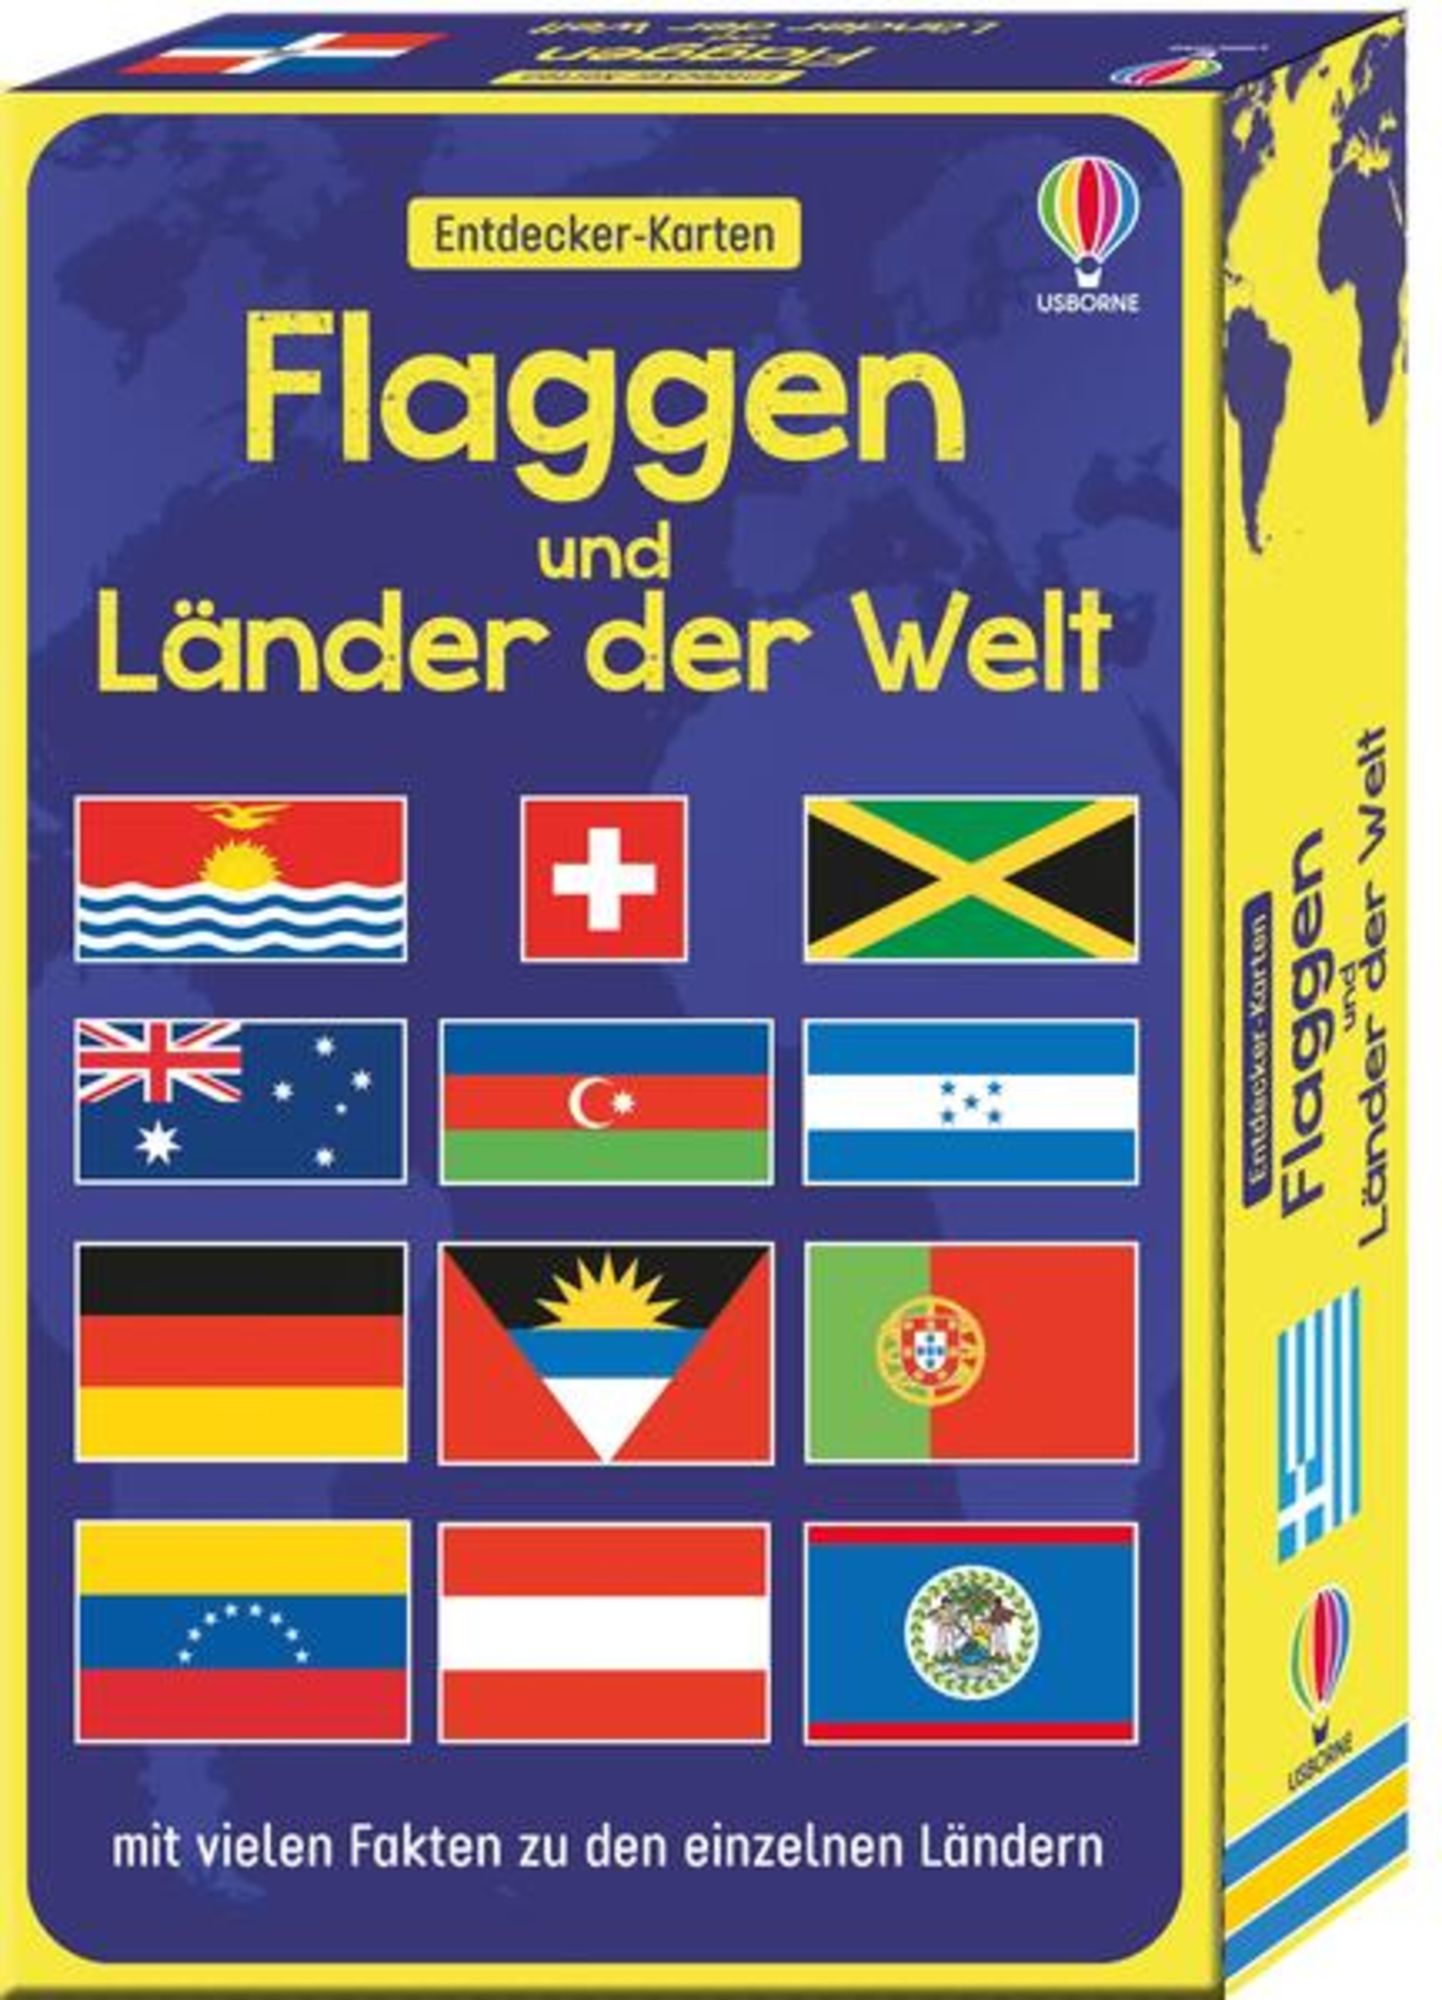 Flaggen der Länder der Welt | Poster